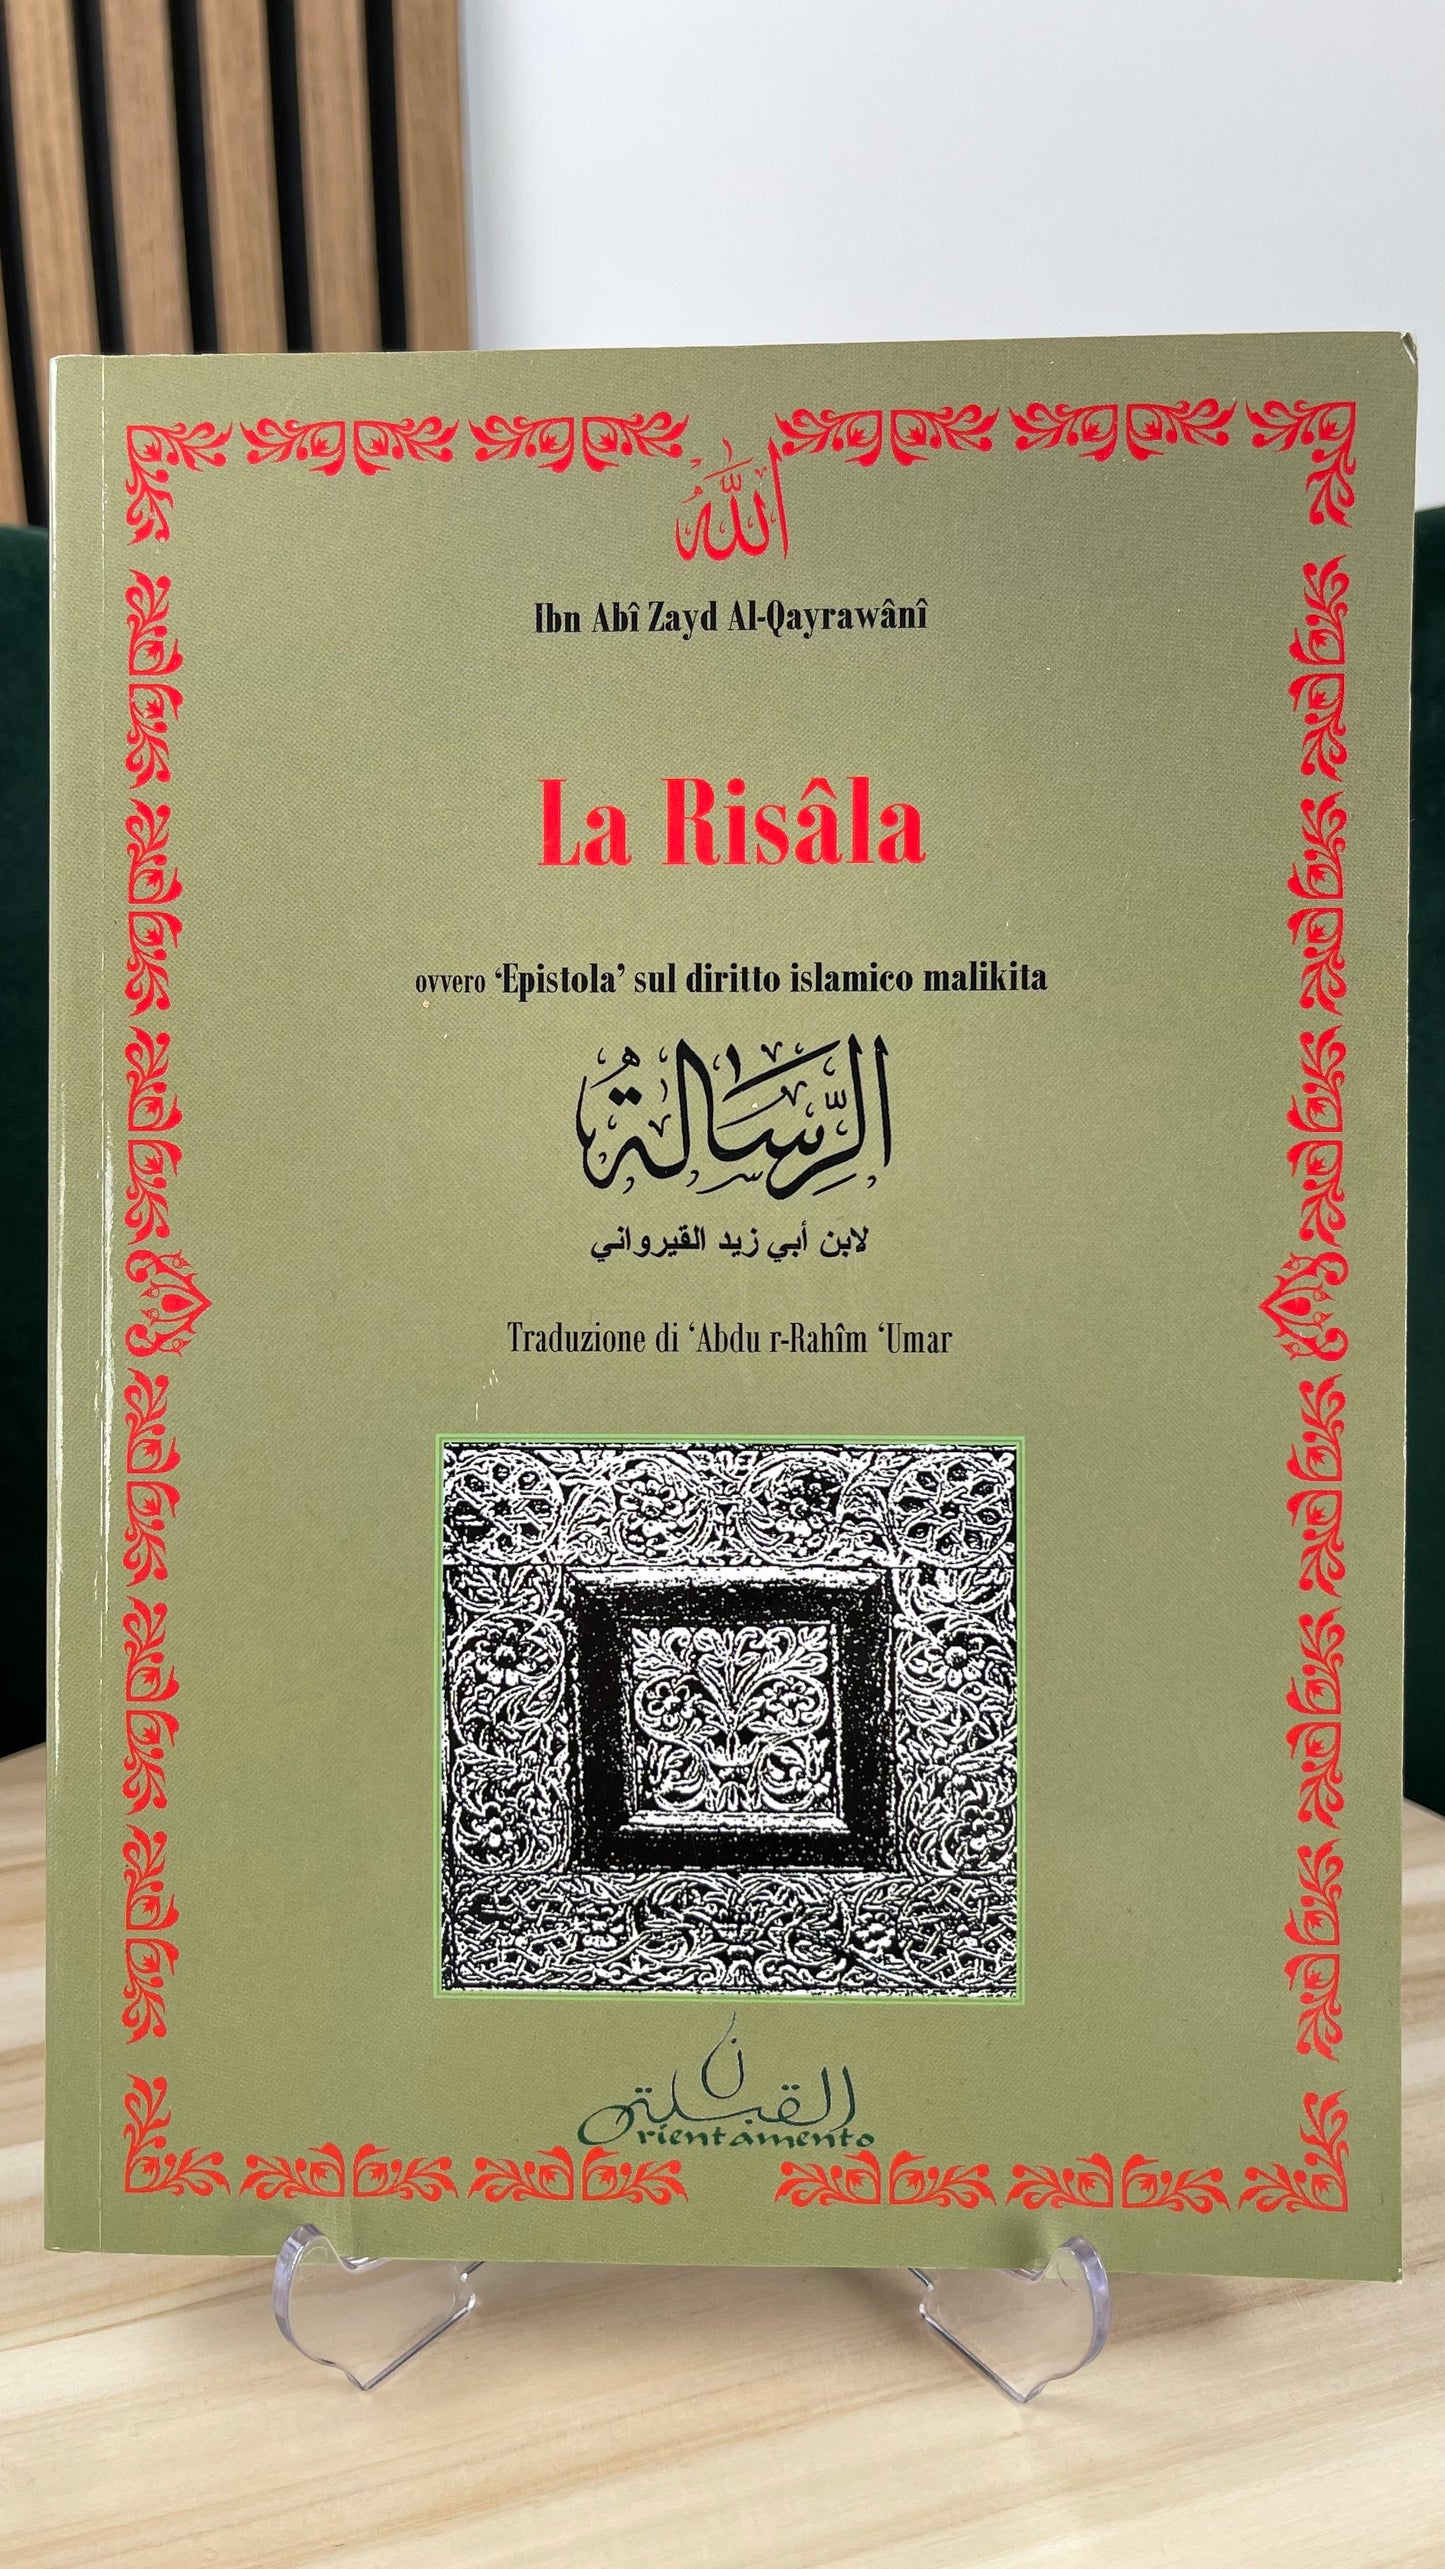 La Risala, ‘Epistola’ sul diritto islamico malikita (solo italiano)